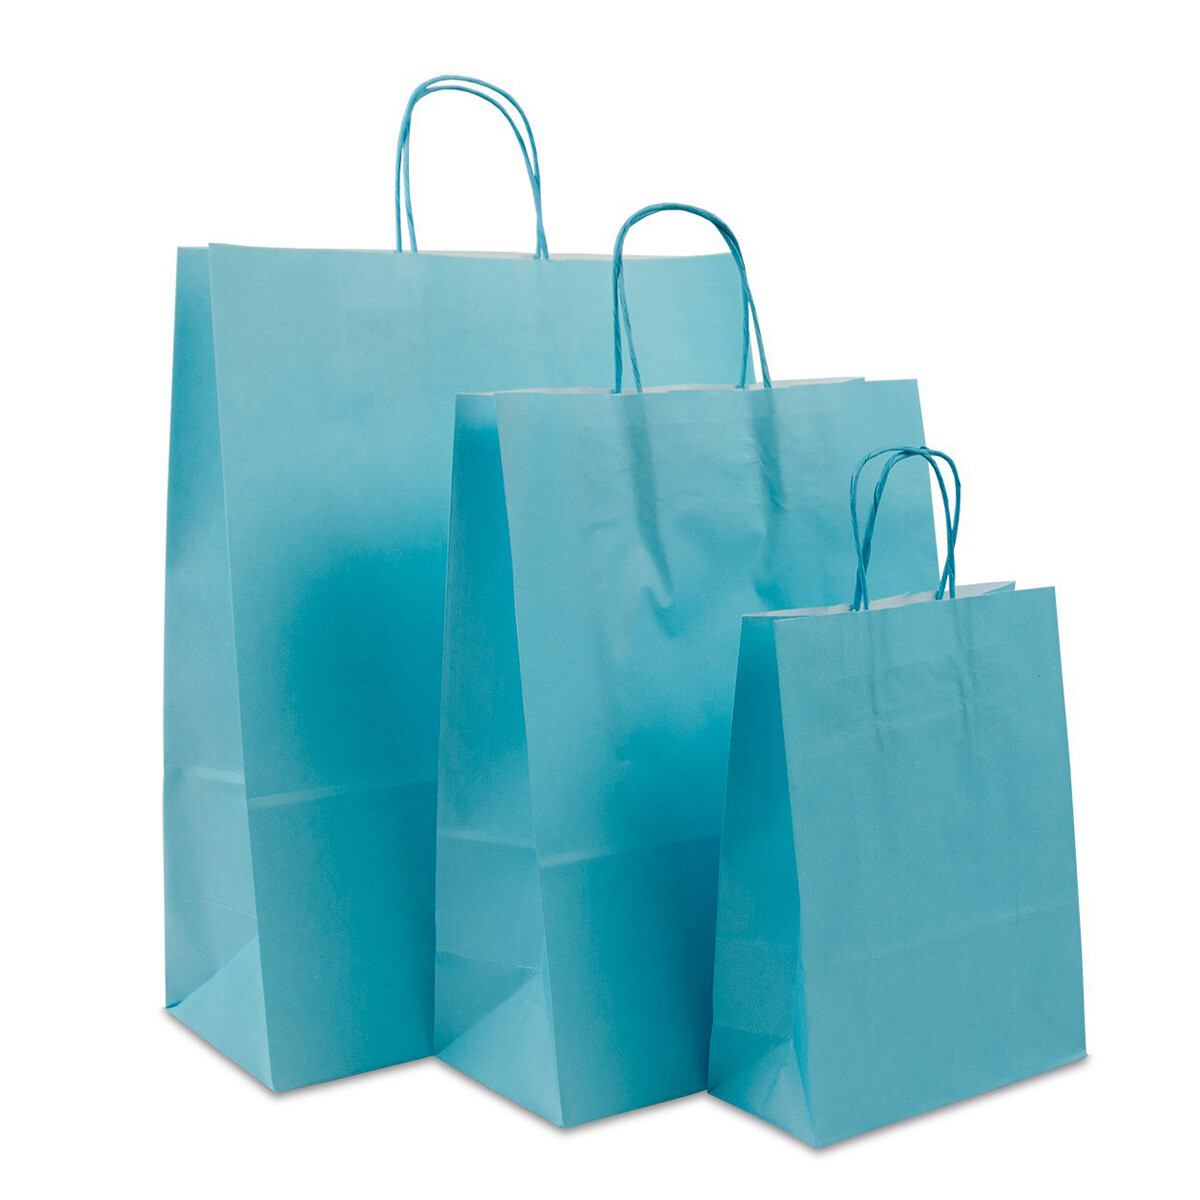 Blauwe papieren tassen met gedraaide handgrepen